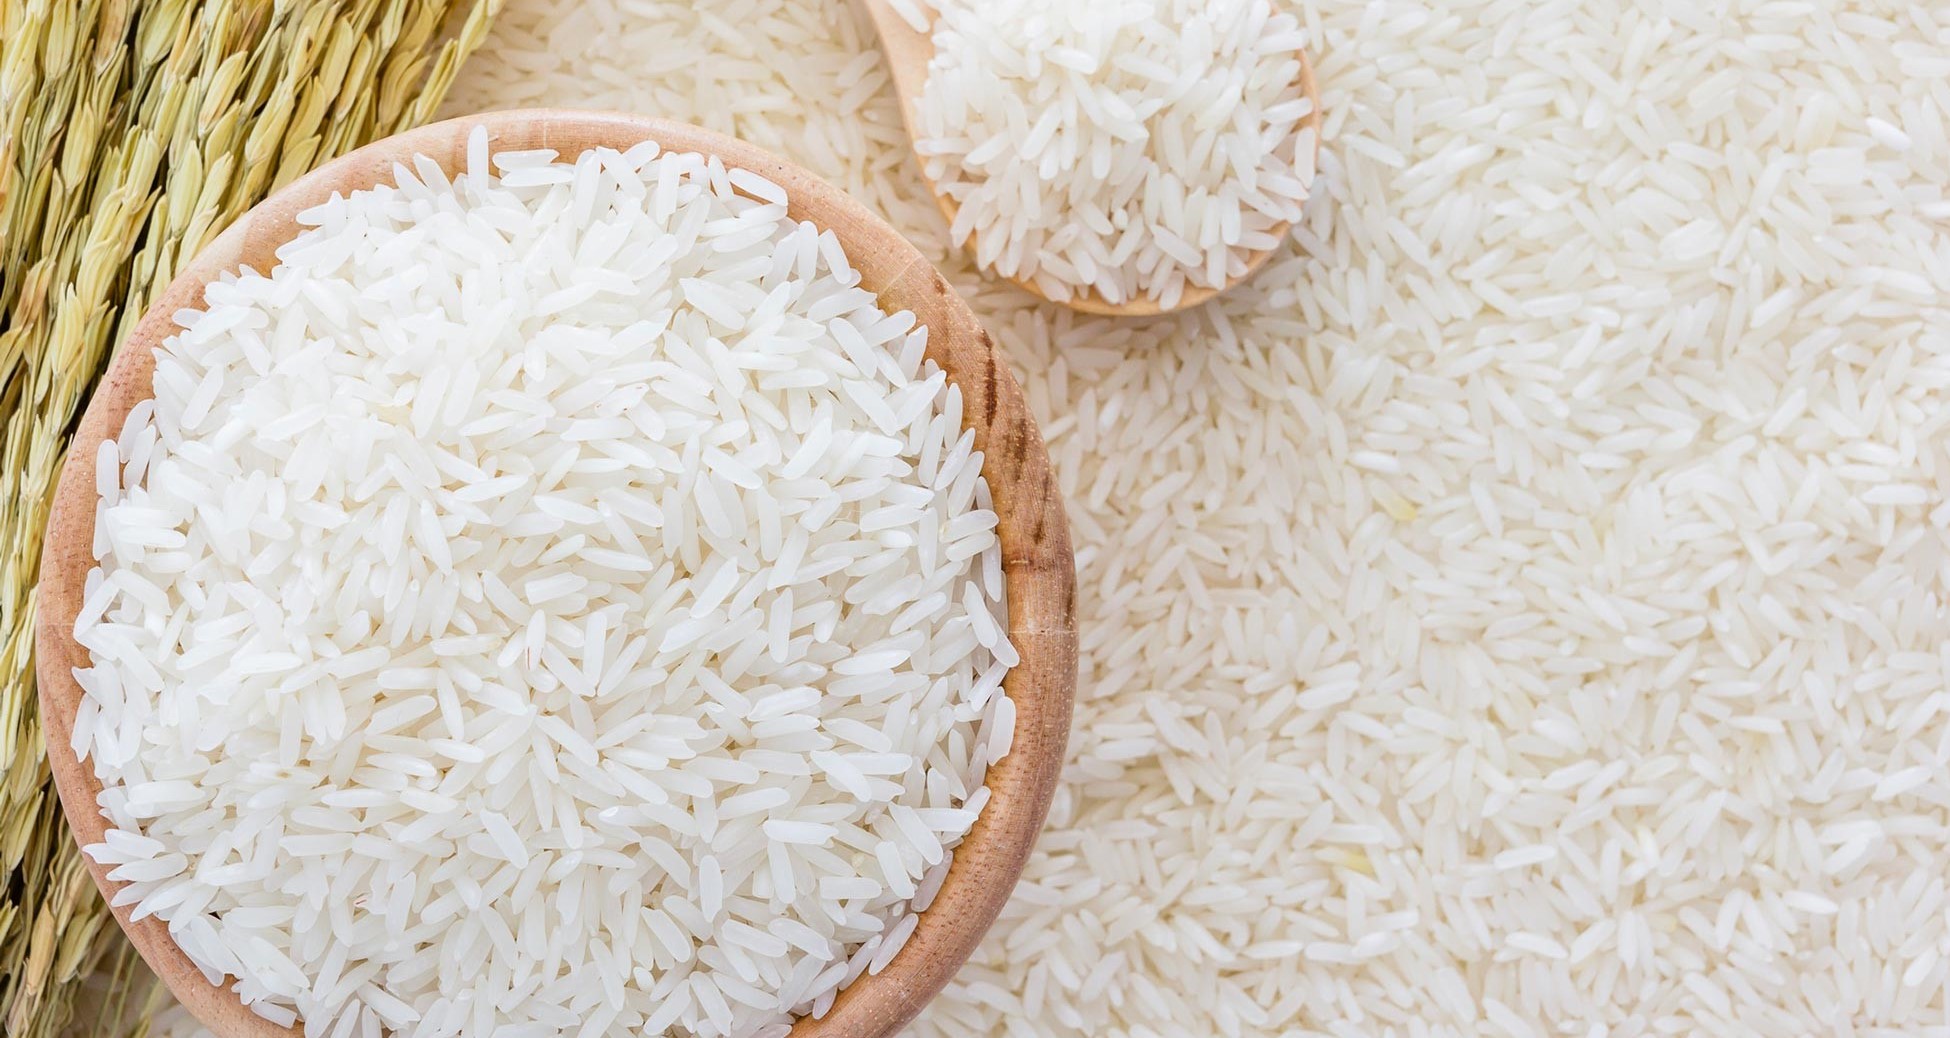 Suchá rýže ve snu